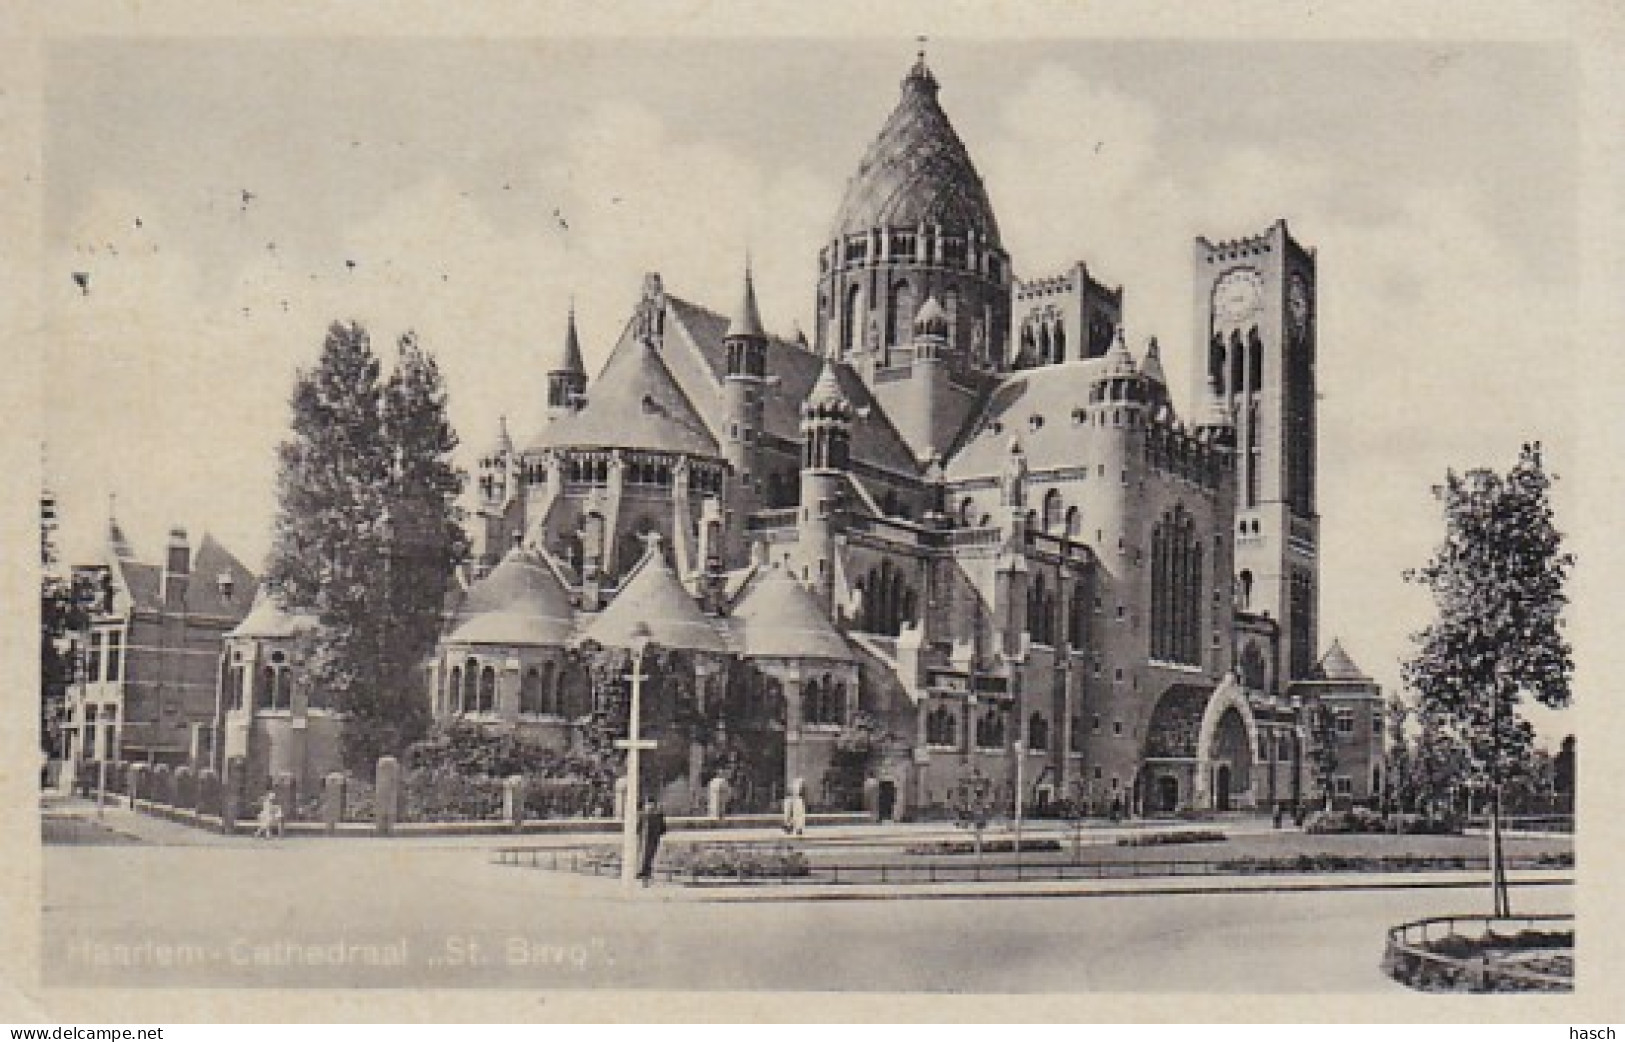 1889	95	Haarlem, Cathedraal ,,St. Baco’’. - Haarlem